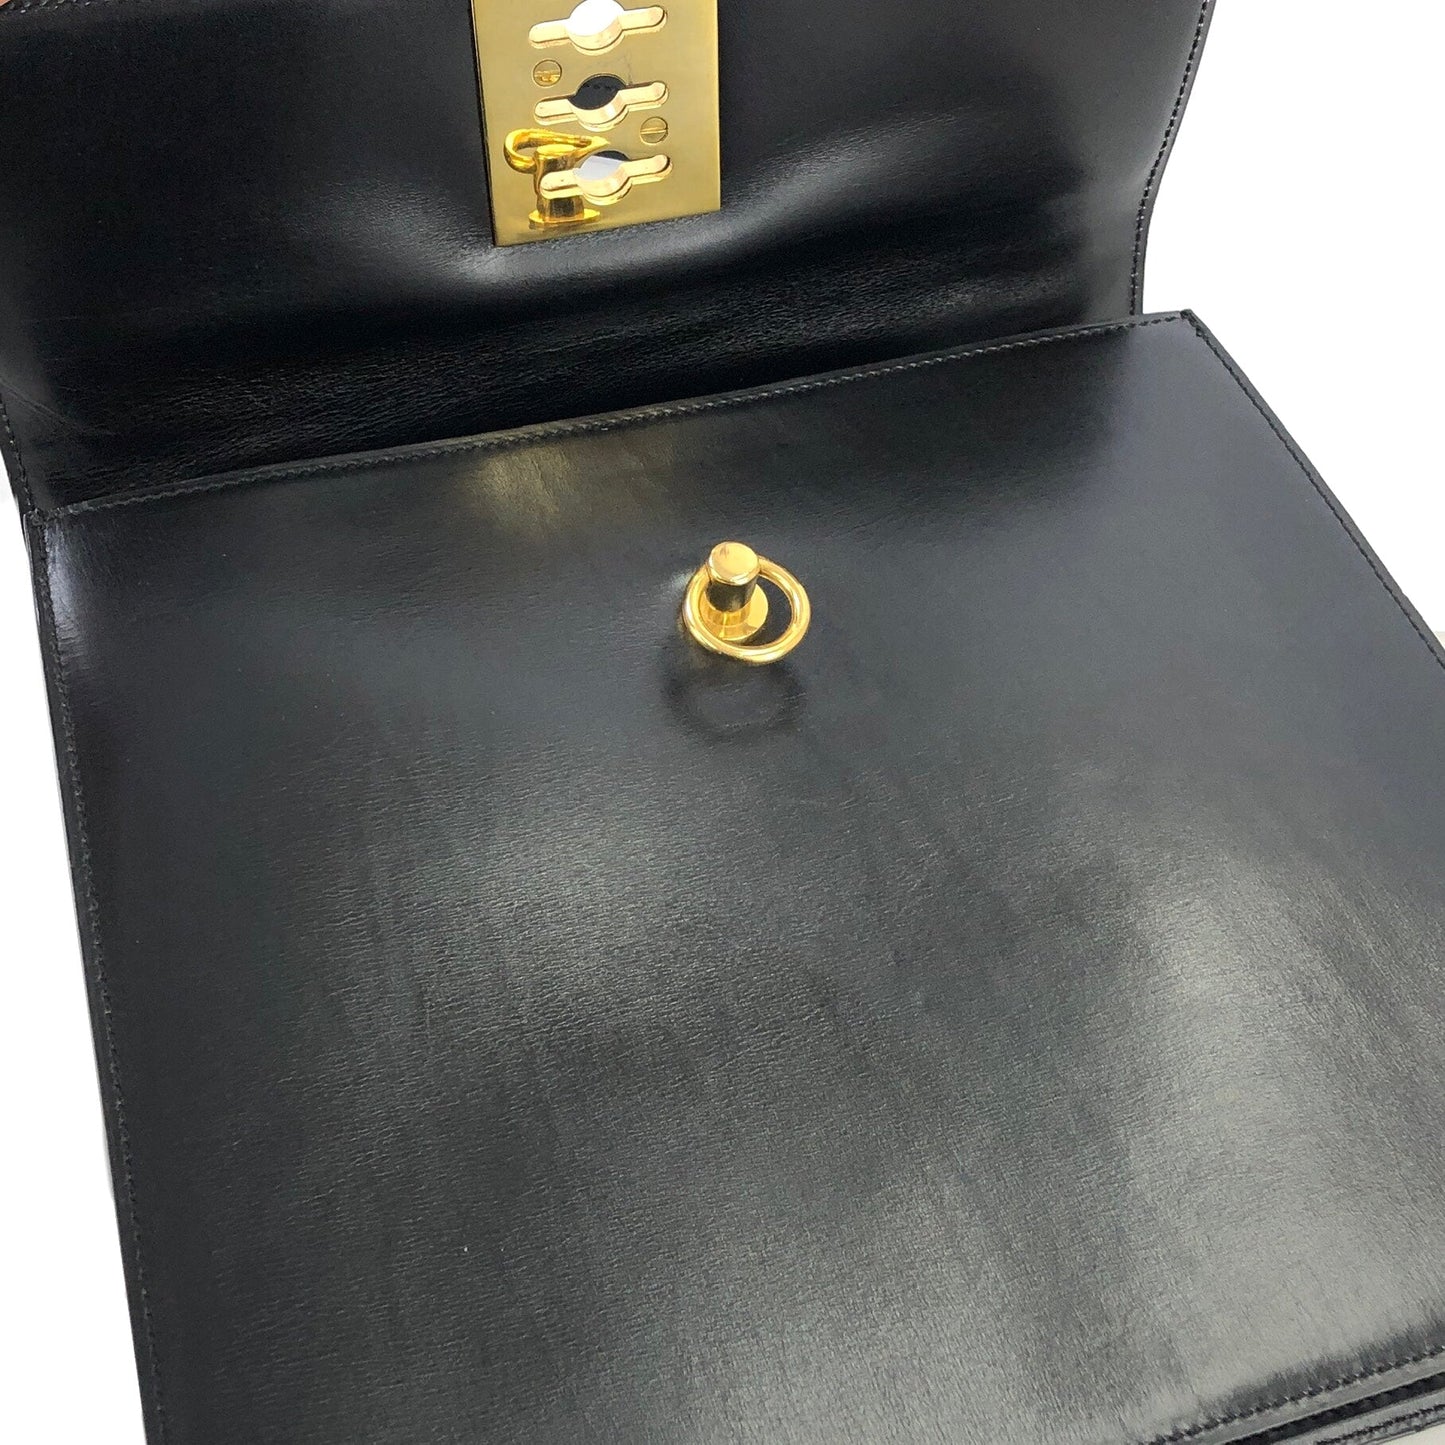 CELINE Toggle Clasp Chain Handbag Black Vintage Old Celine f27nxf